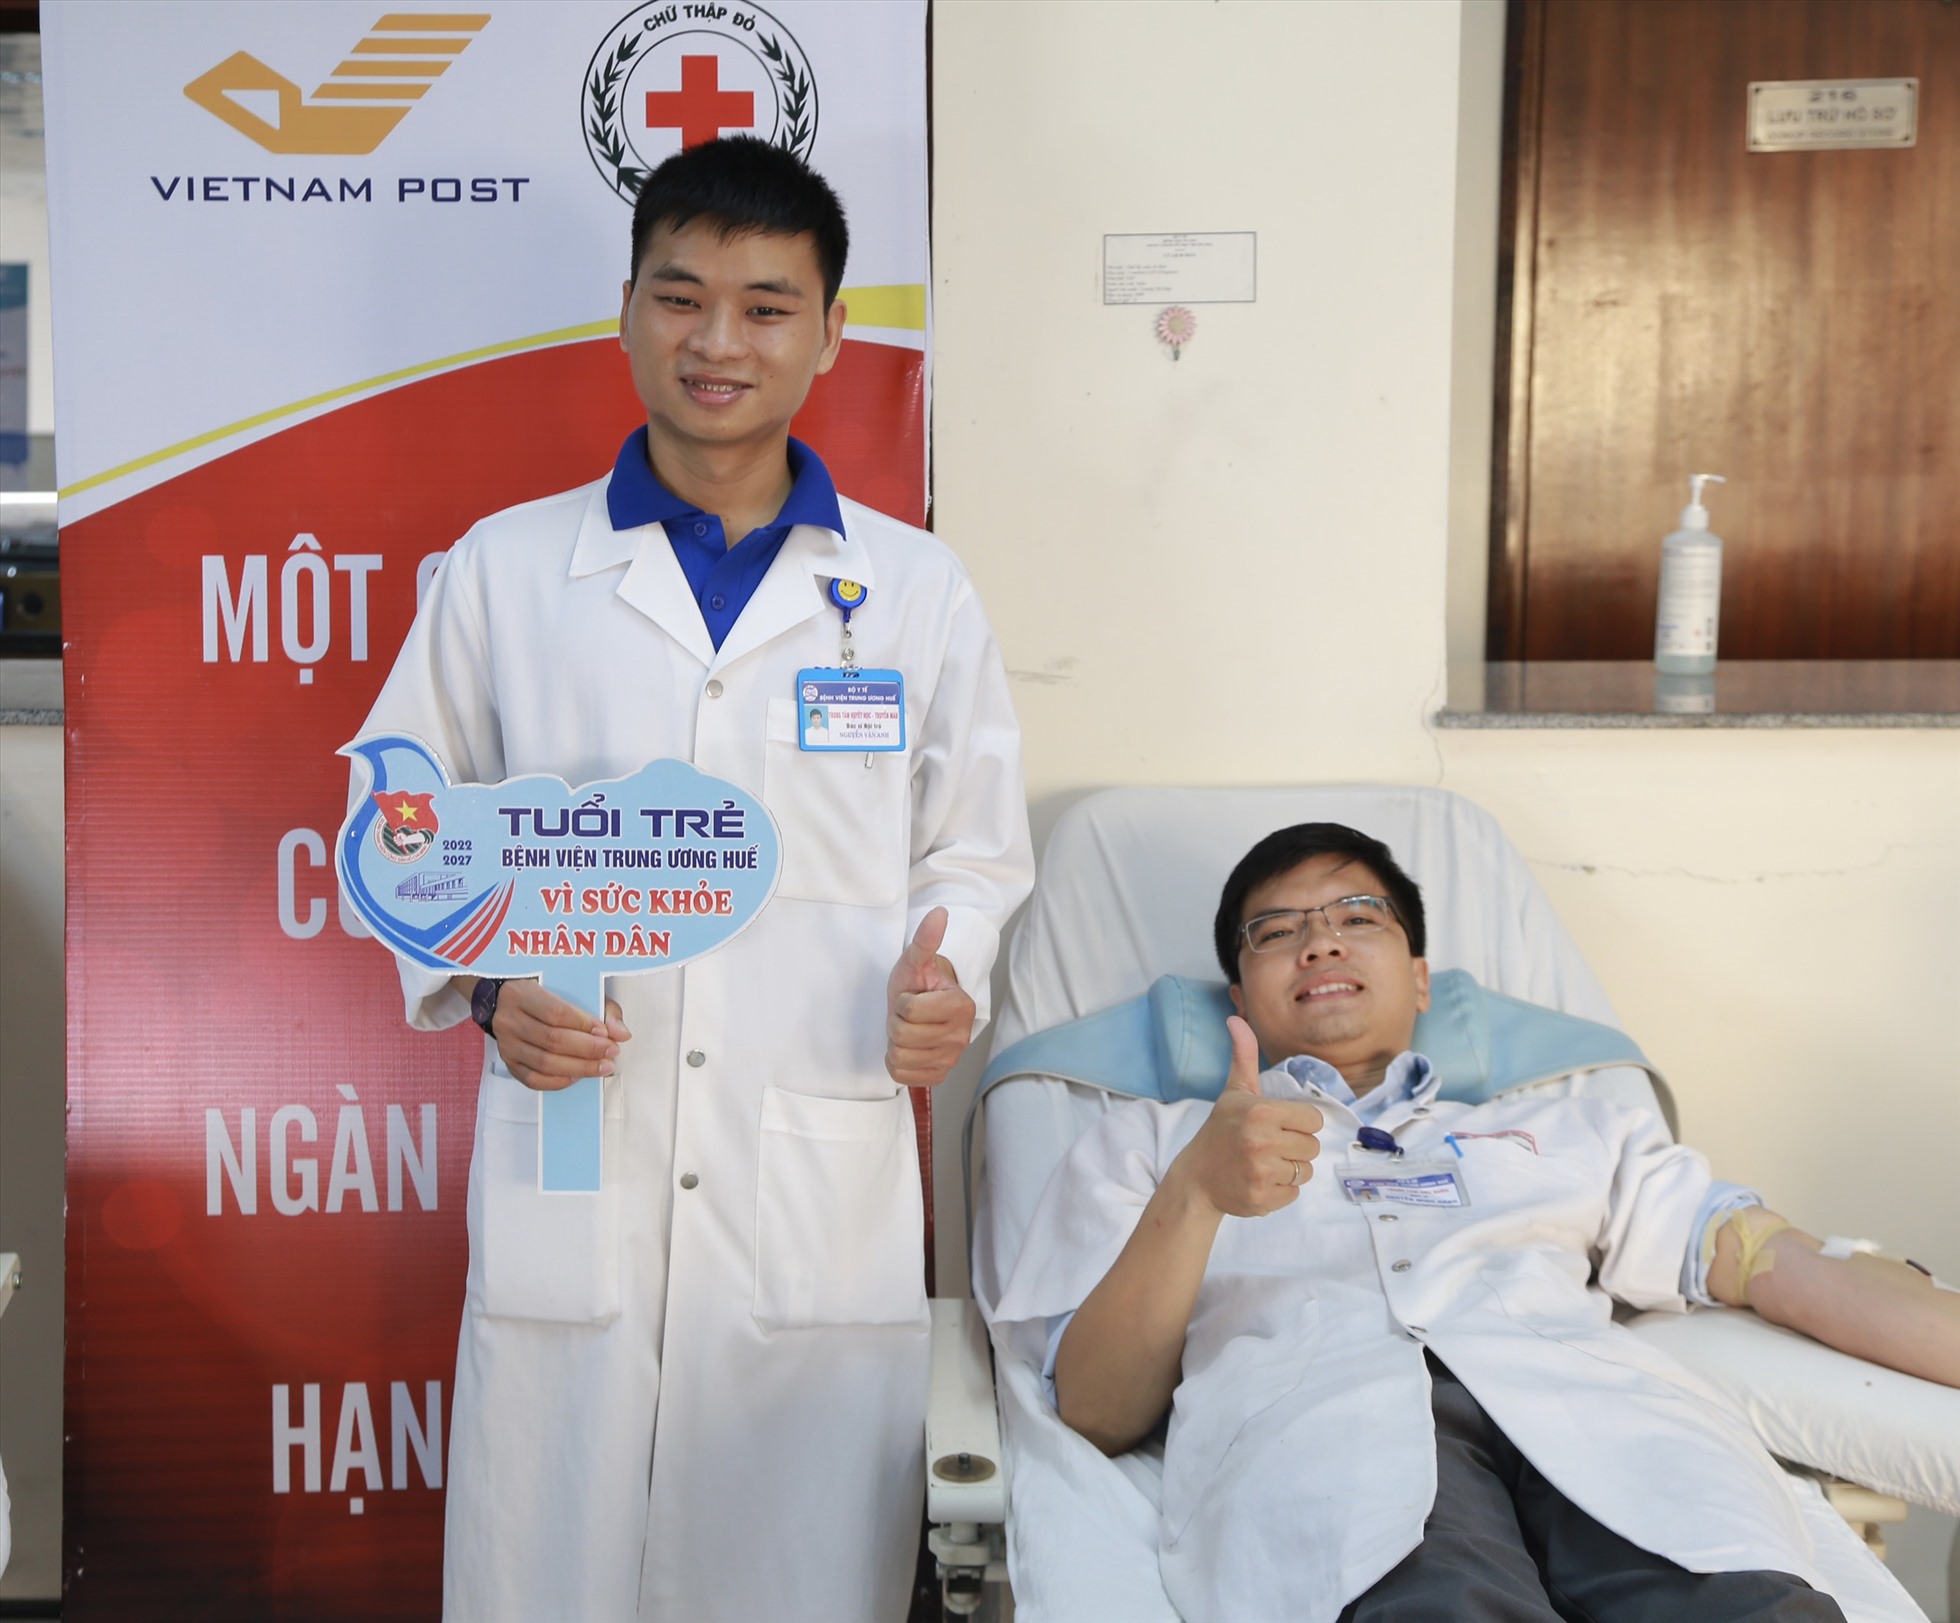 Bác sĩ Nguyễn Minh Hành - Bí thư đoàn Bệnh viện Trung ương Huế tham gia hiến máu.